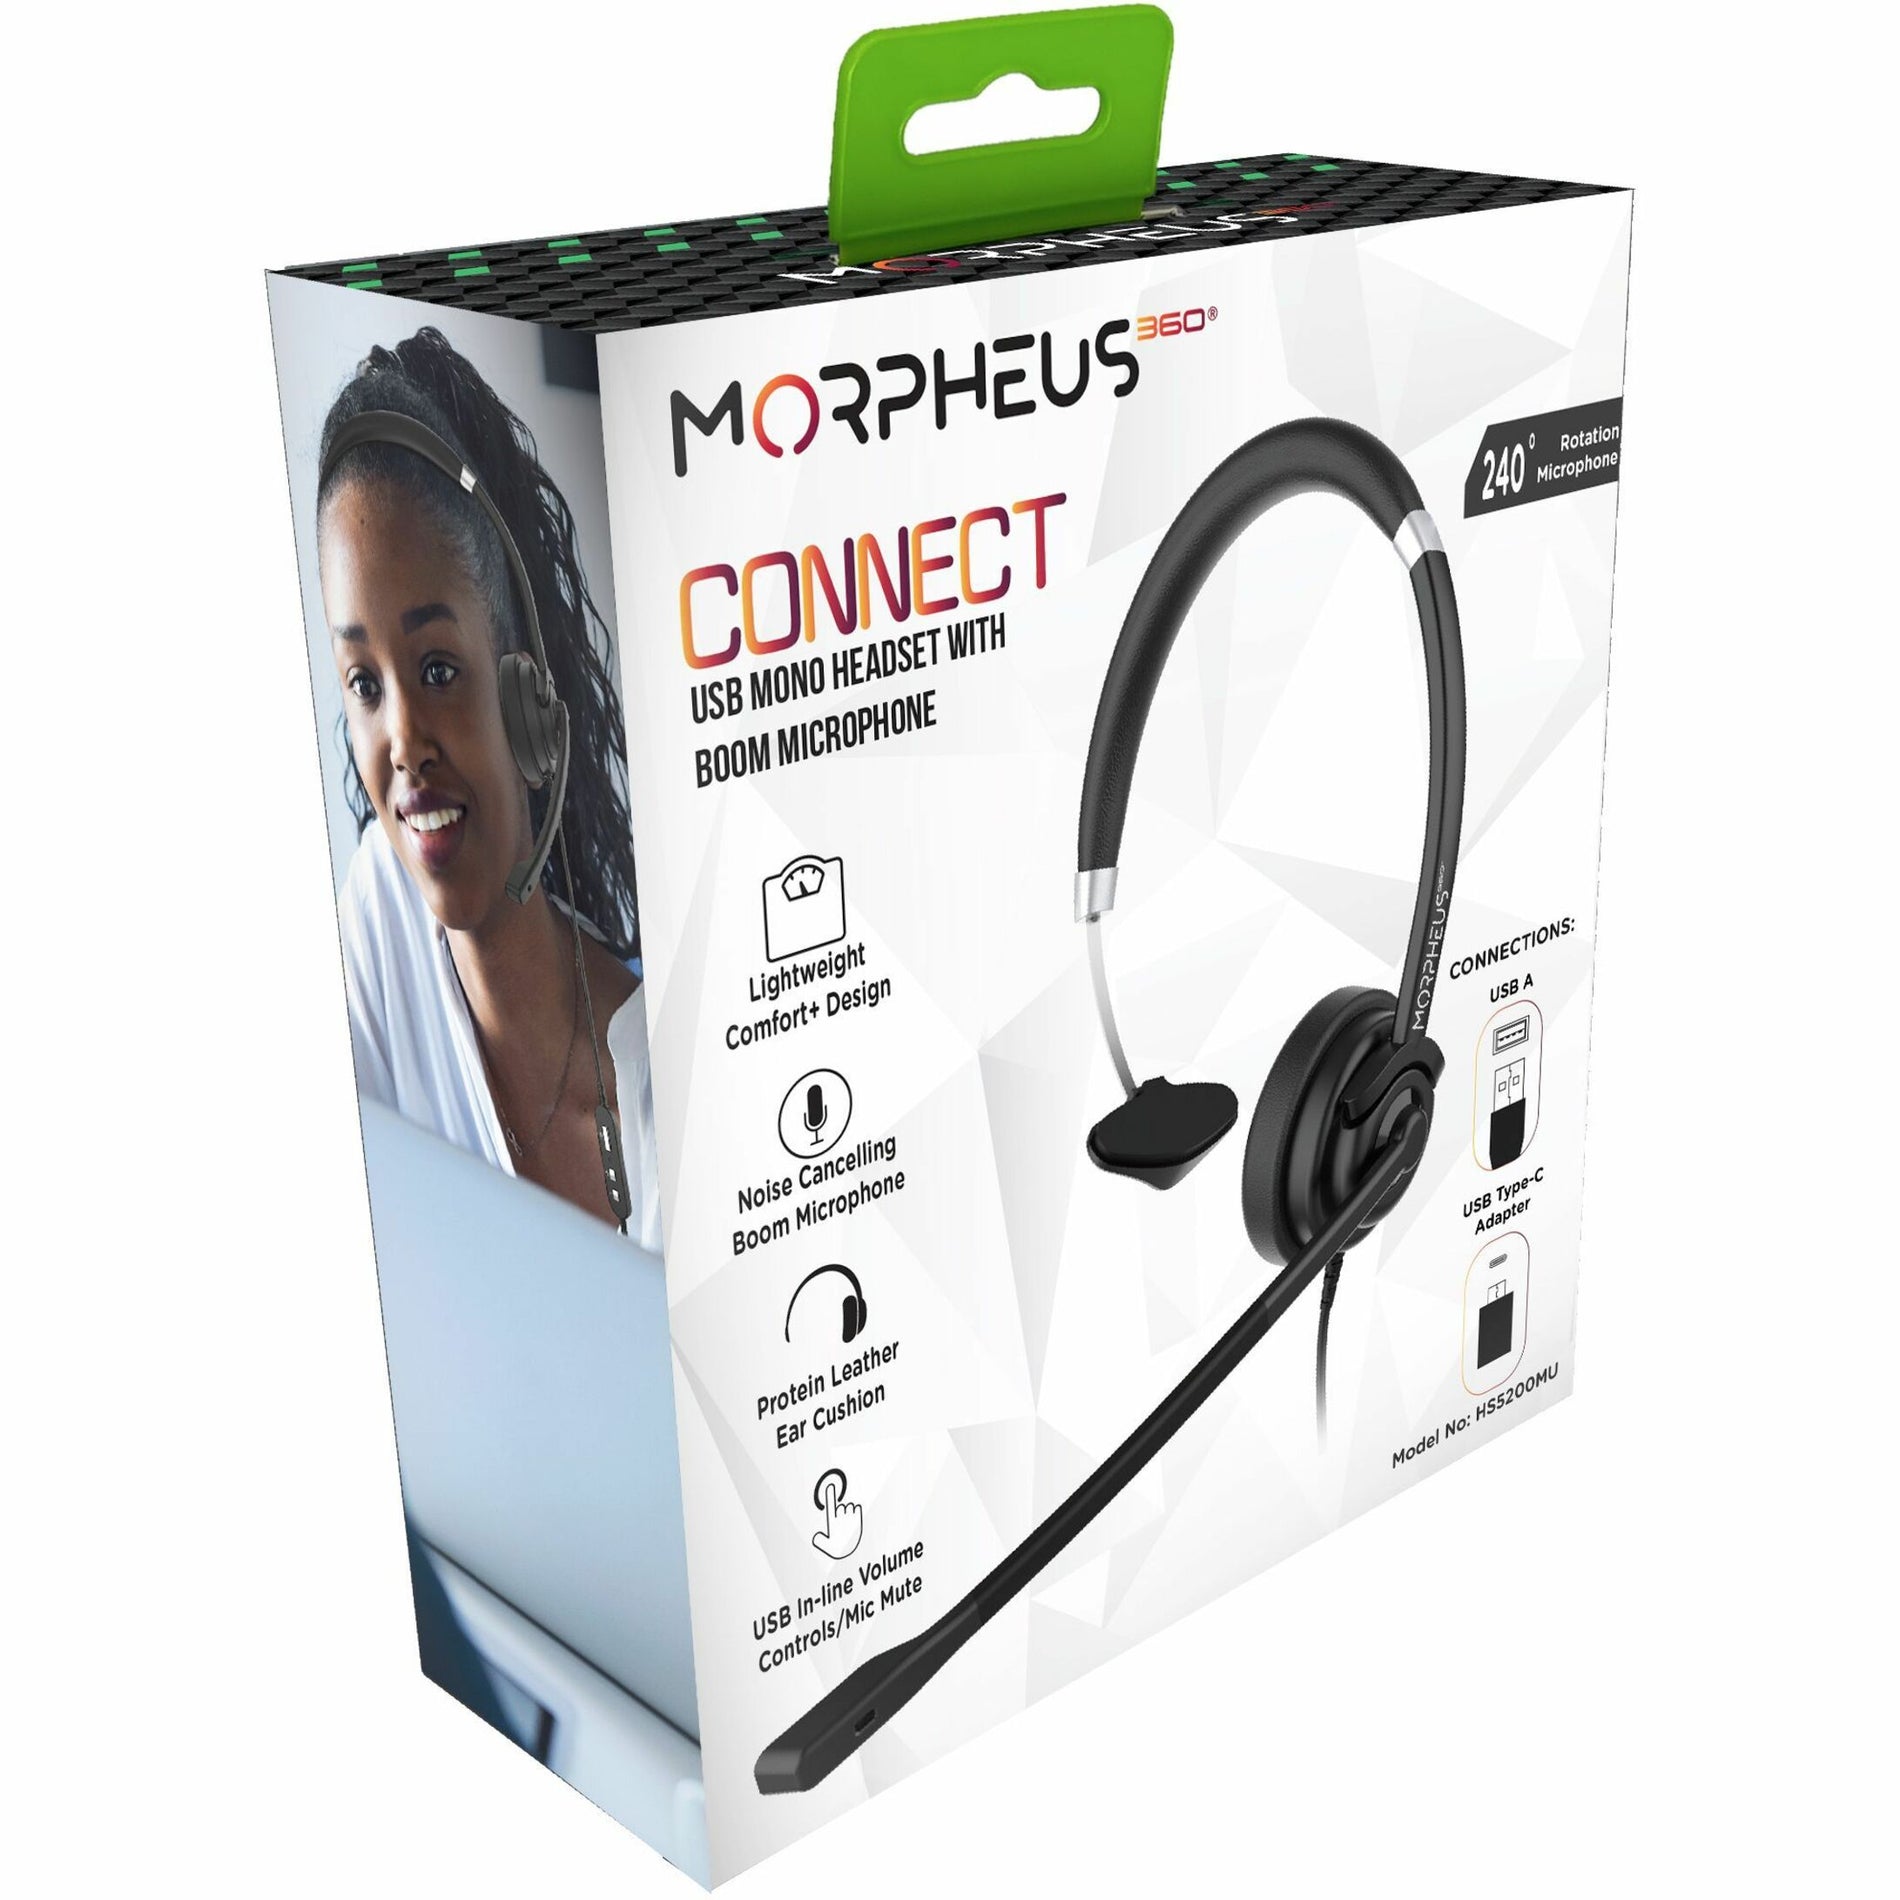 Morpheus 360 HS5200MU USB モノラルヘッドセット、ブームマイク付き、快適、プラグアンドプレイ、軽量。ブランド名はモルフェウスです。